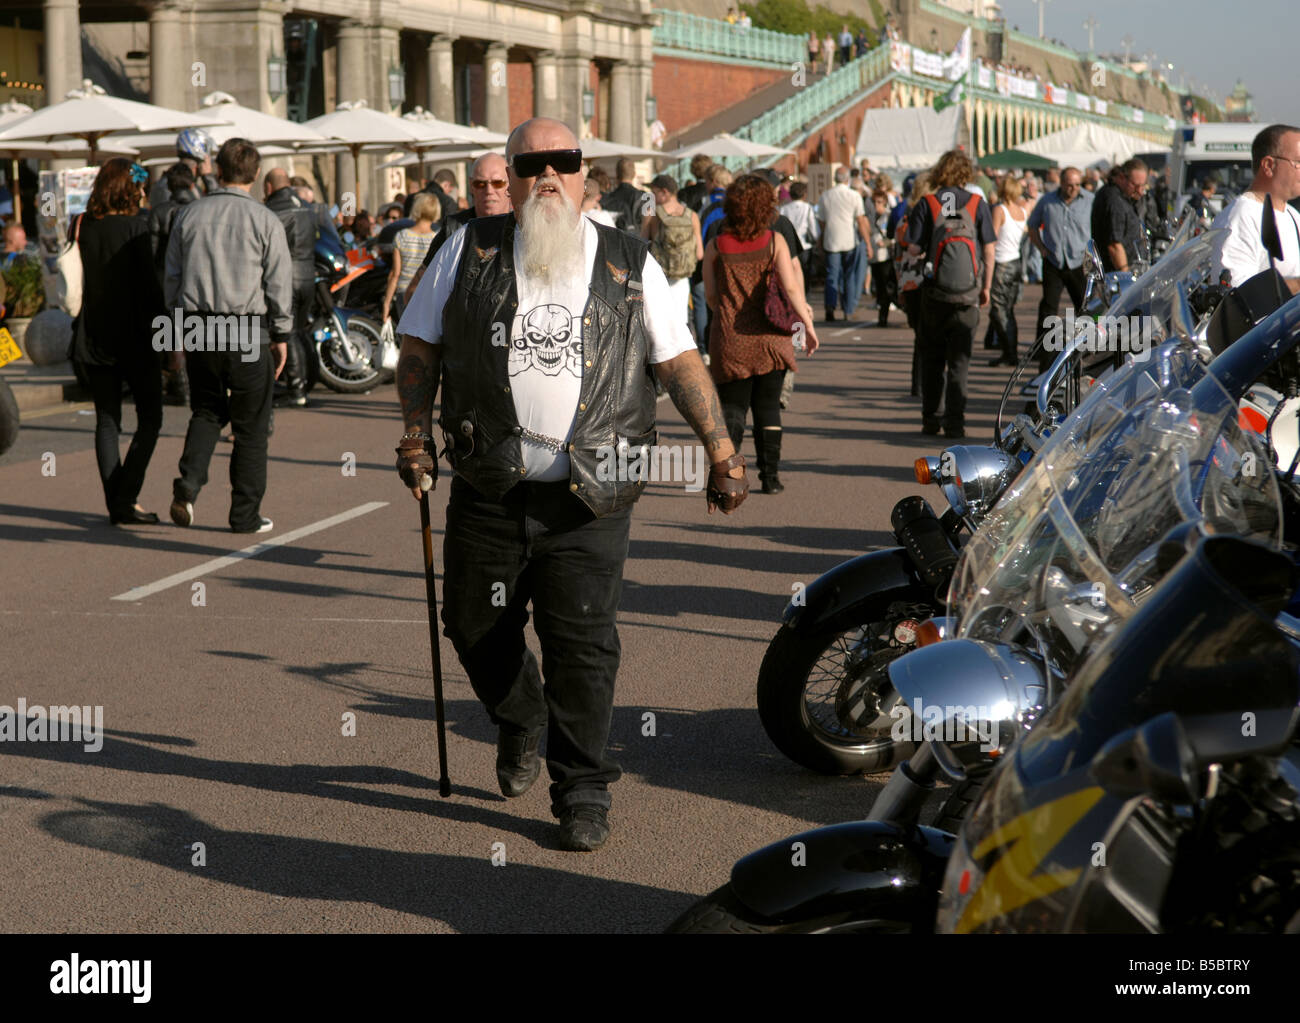 Le vieillissement de biker promenades avec un bâton à l'événement moto Brightona sur le front de mer de Brighton UK Banque D'Images